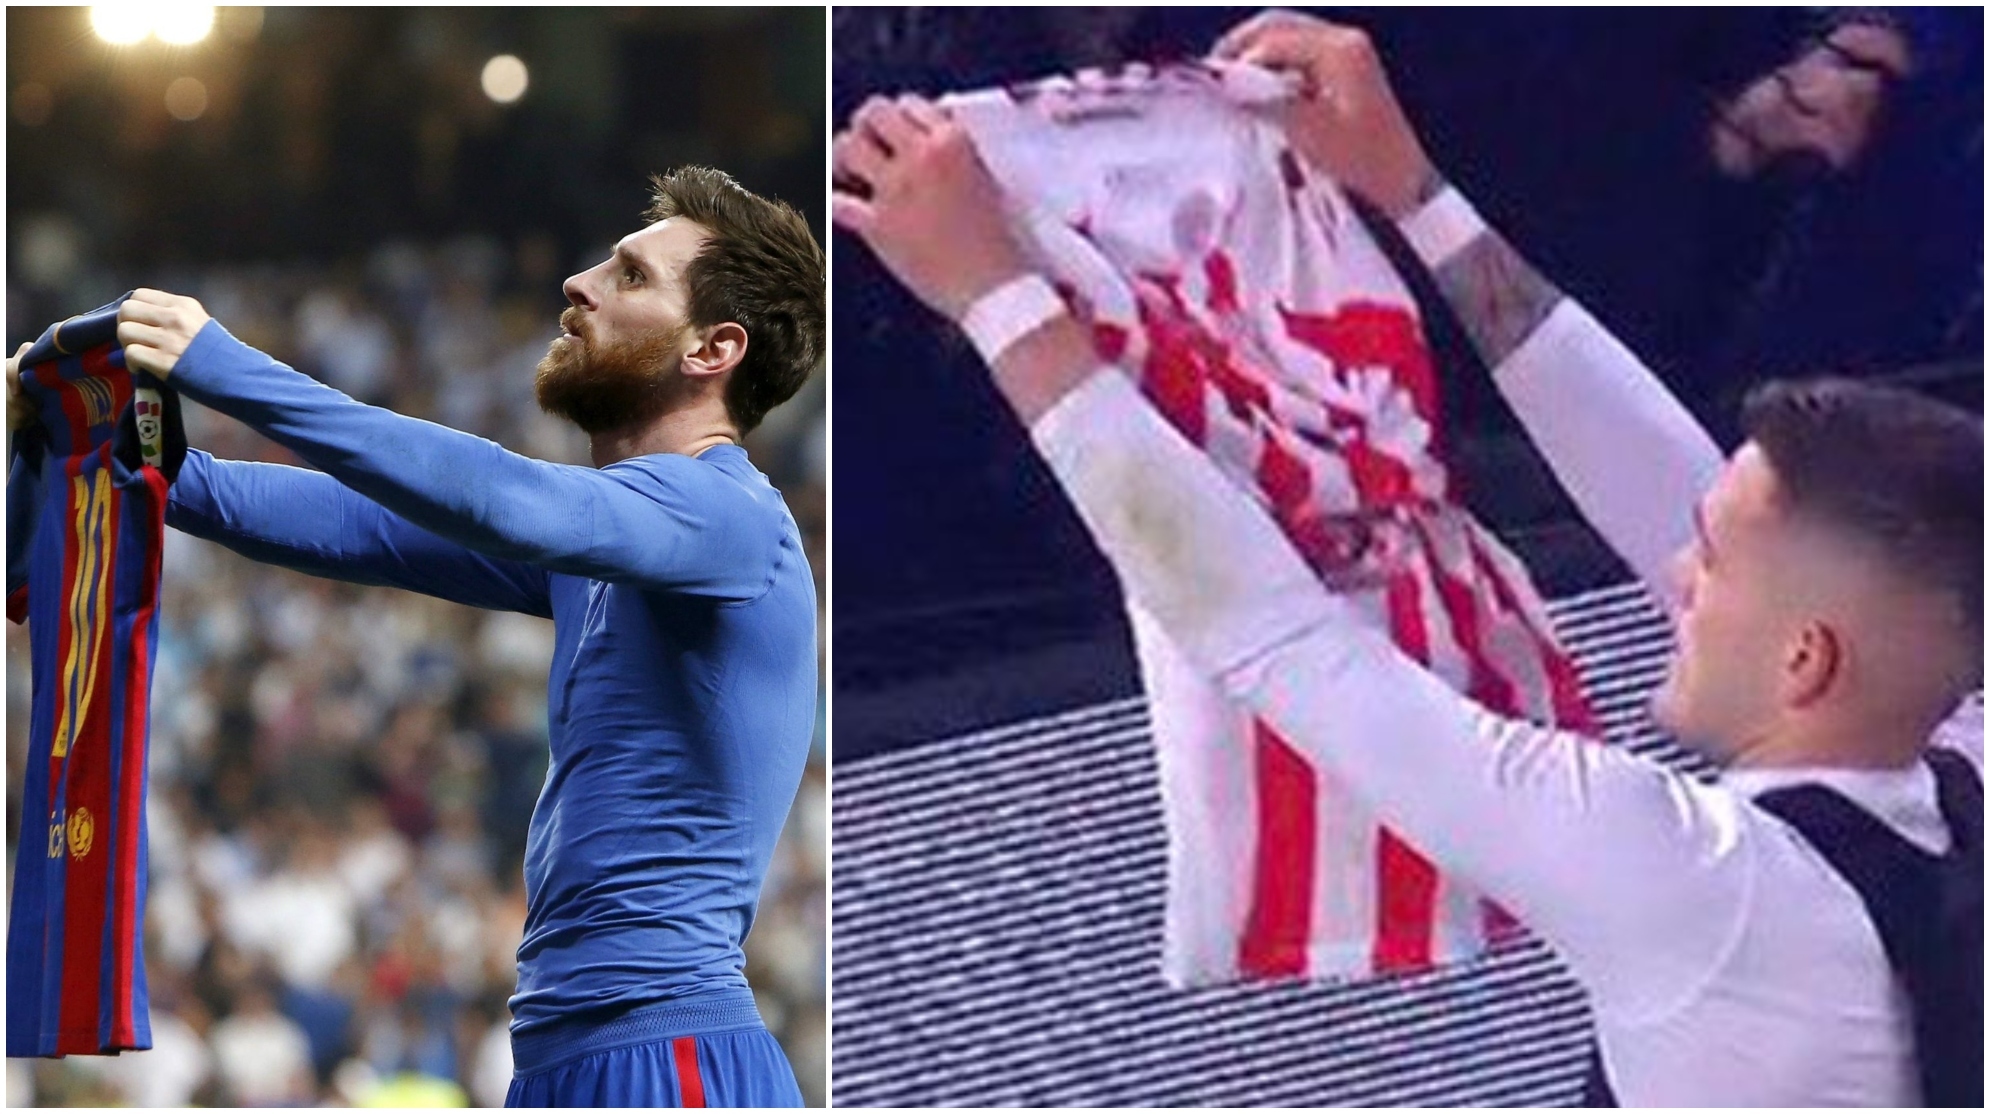 El festejo 'a lo Messi' de un jugador argentino ante Boca que podría costarle tres partidos de sanción